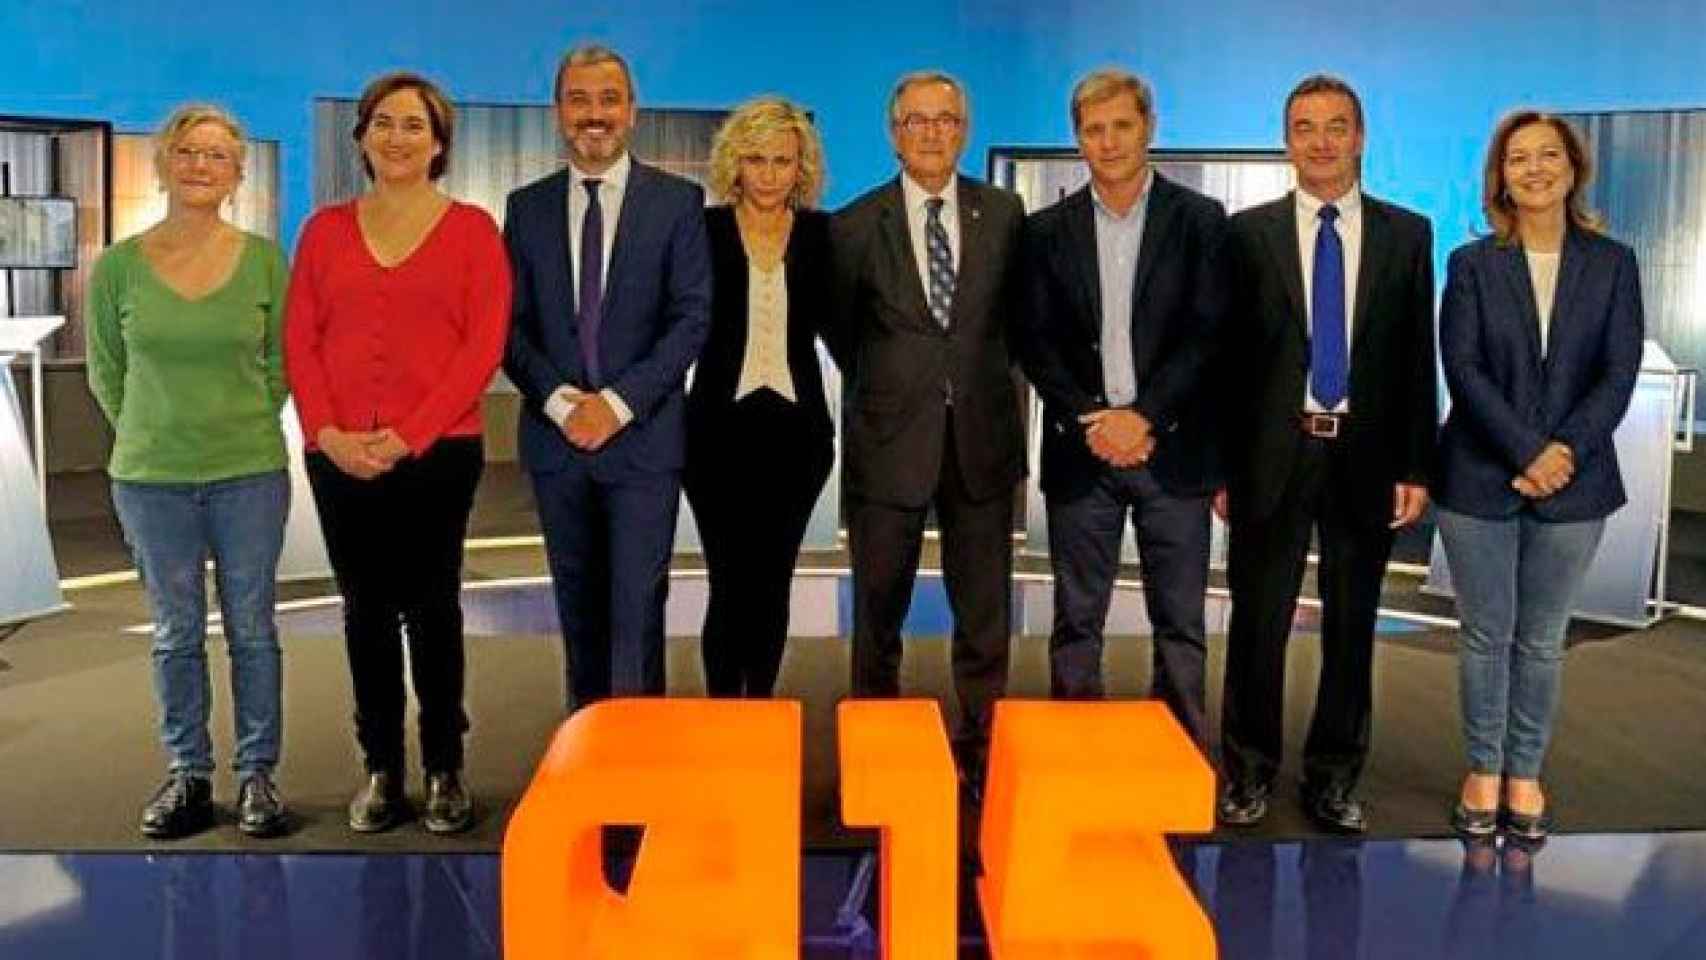 Los candidatos a la alcaldía de Barcelona, en un debate en las elecciones de 2015 / CG